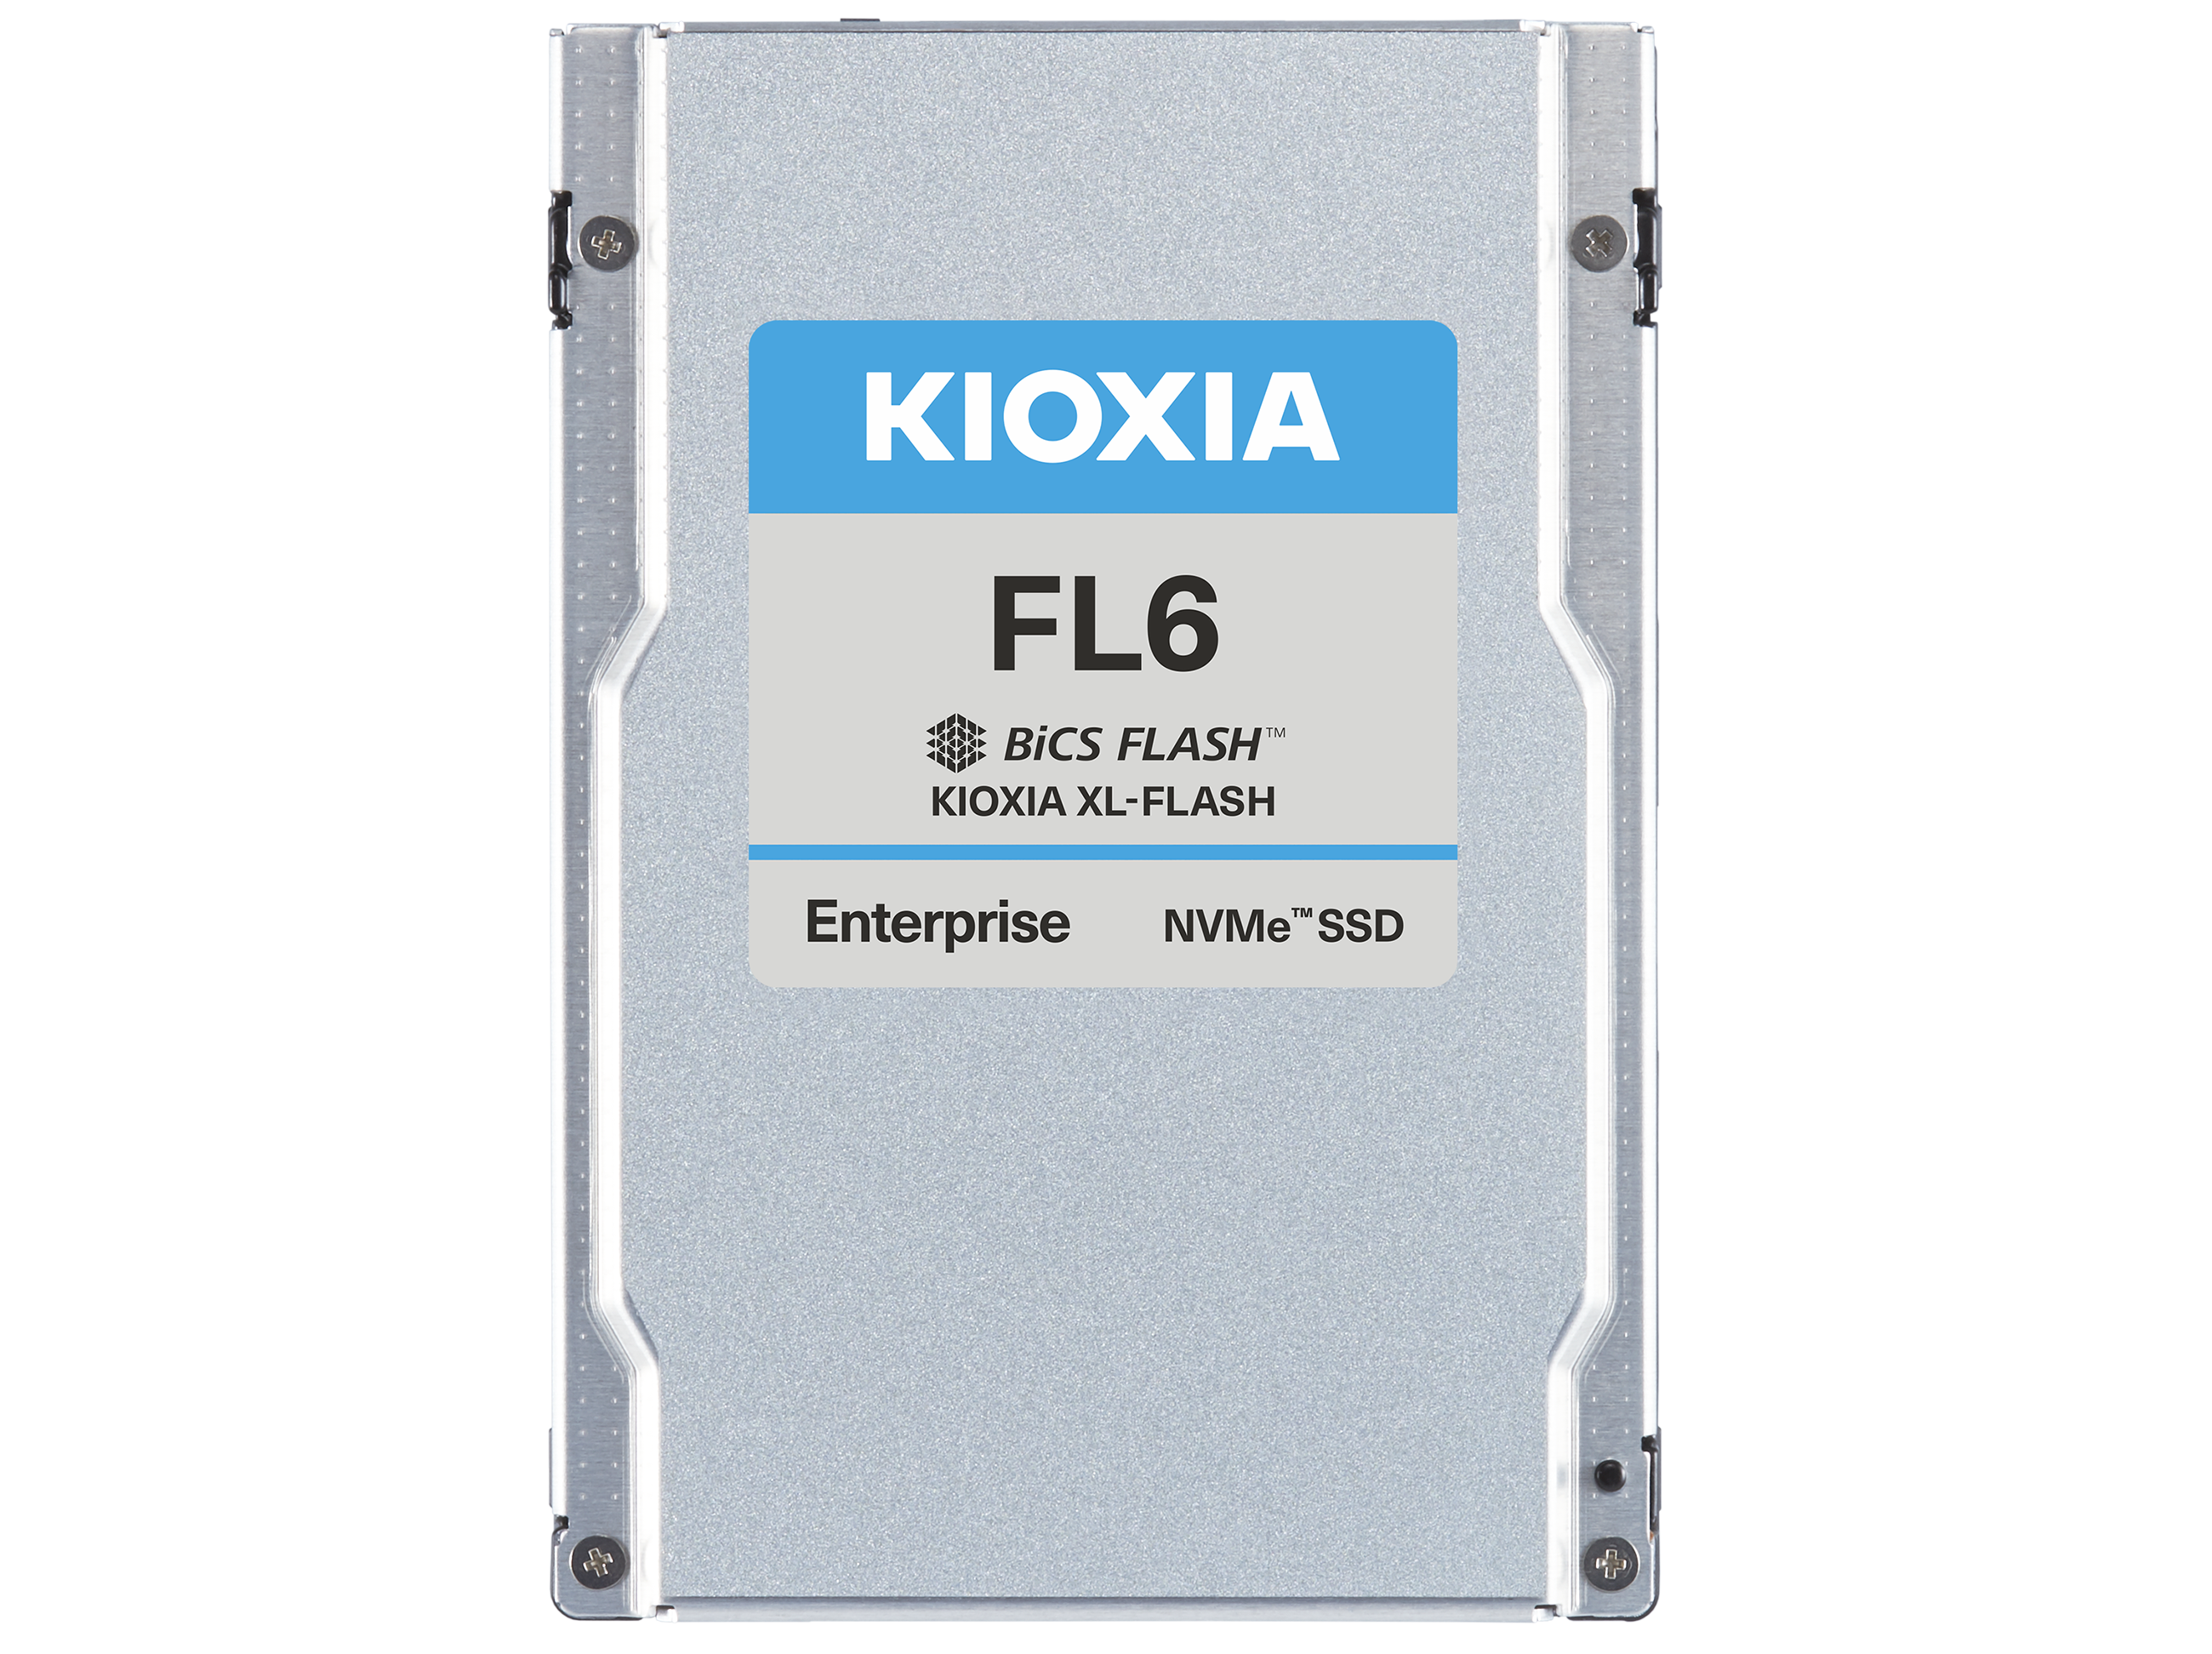 Kioxia announces the FL6 PCIe 4.0 XL-FLASH SSD: a more affordable 